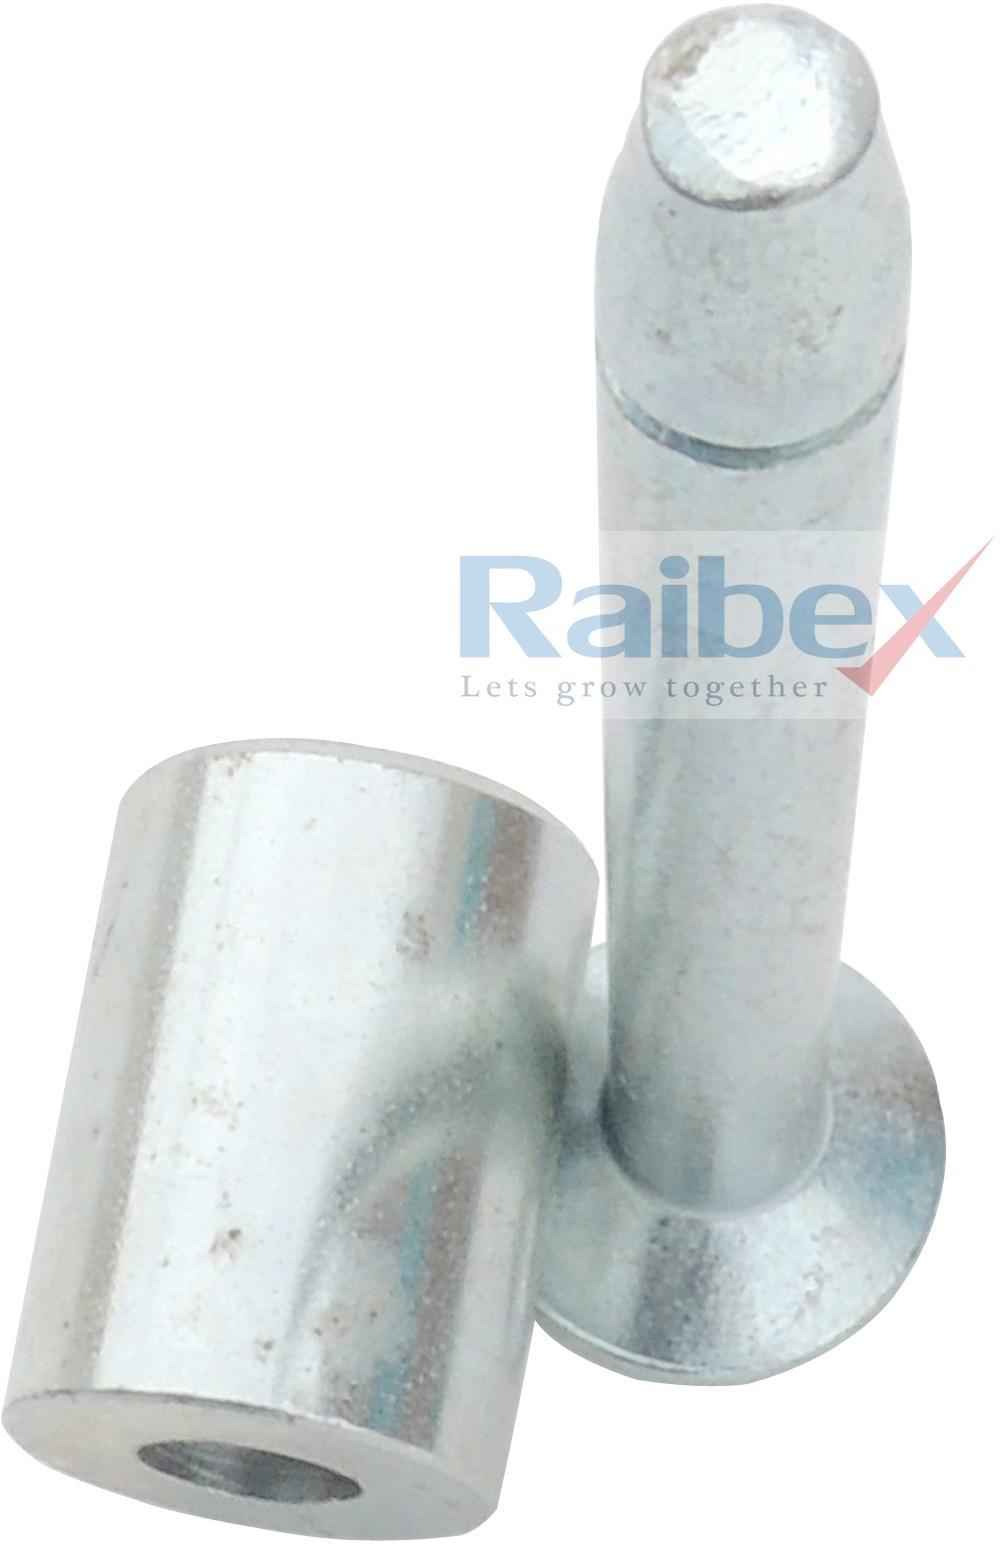 RAIBEX metal seals